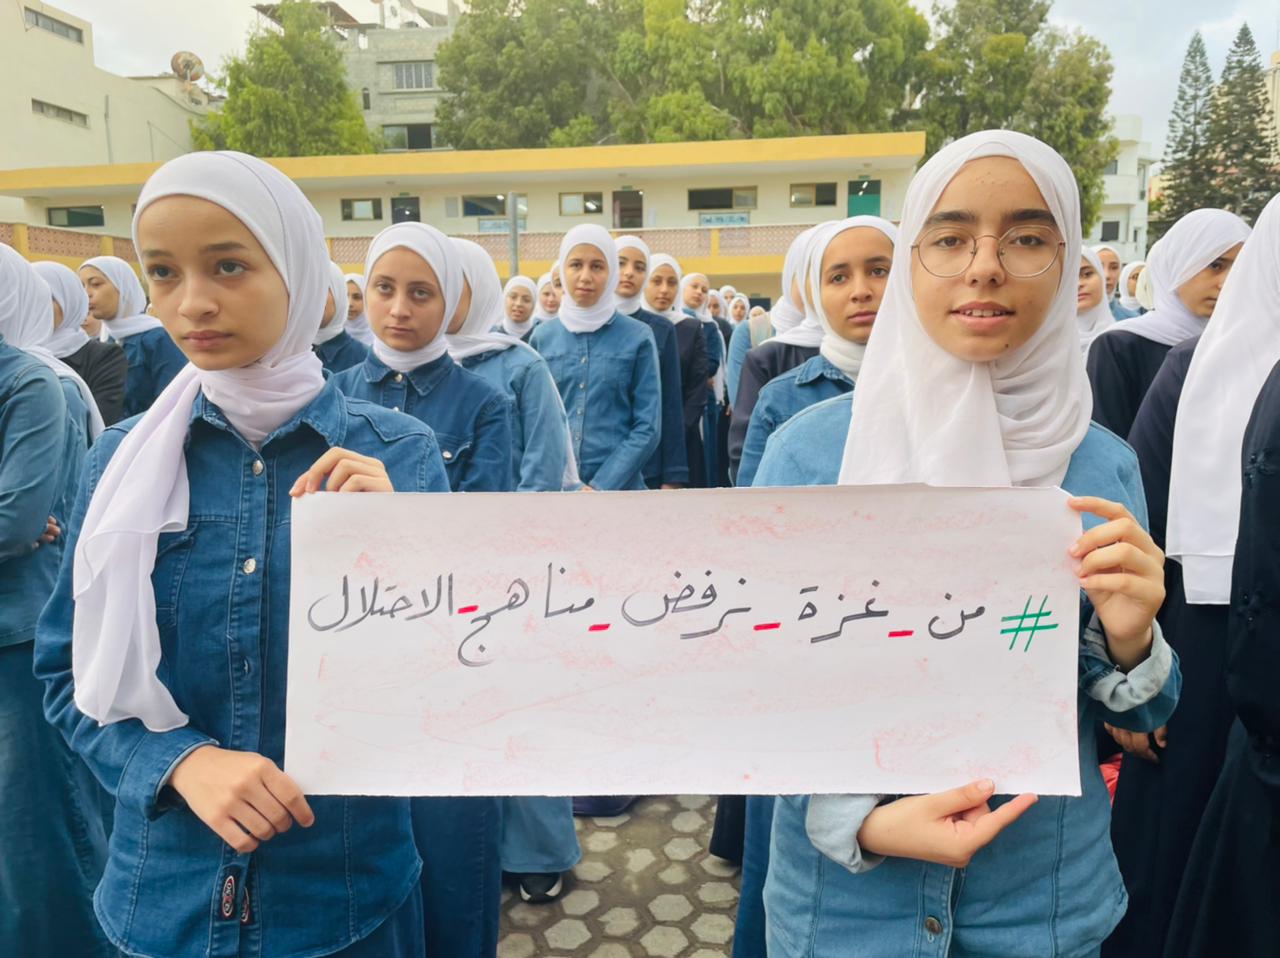 التعليم بغزة تُطلق فعاليات لرفض المنهاج الإسرائيلي المحرف على مدارس القدس